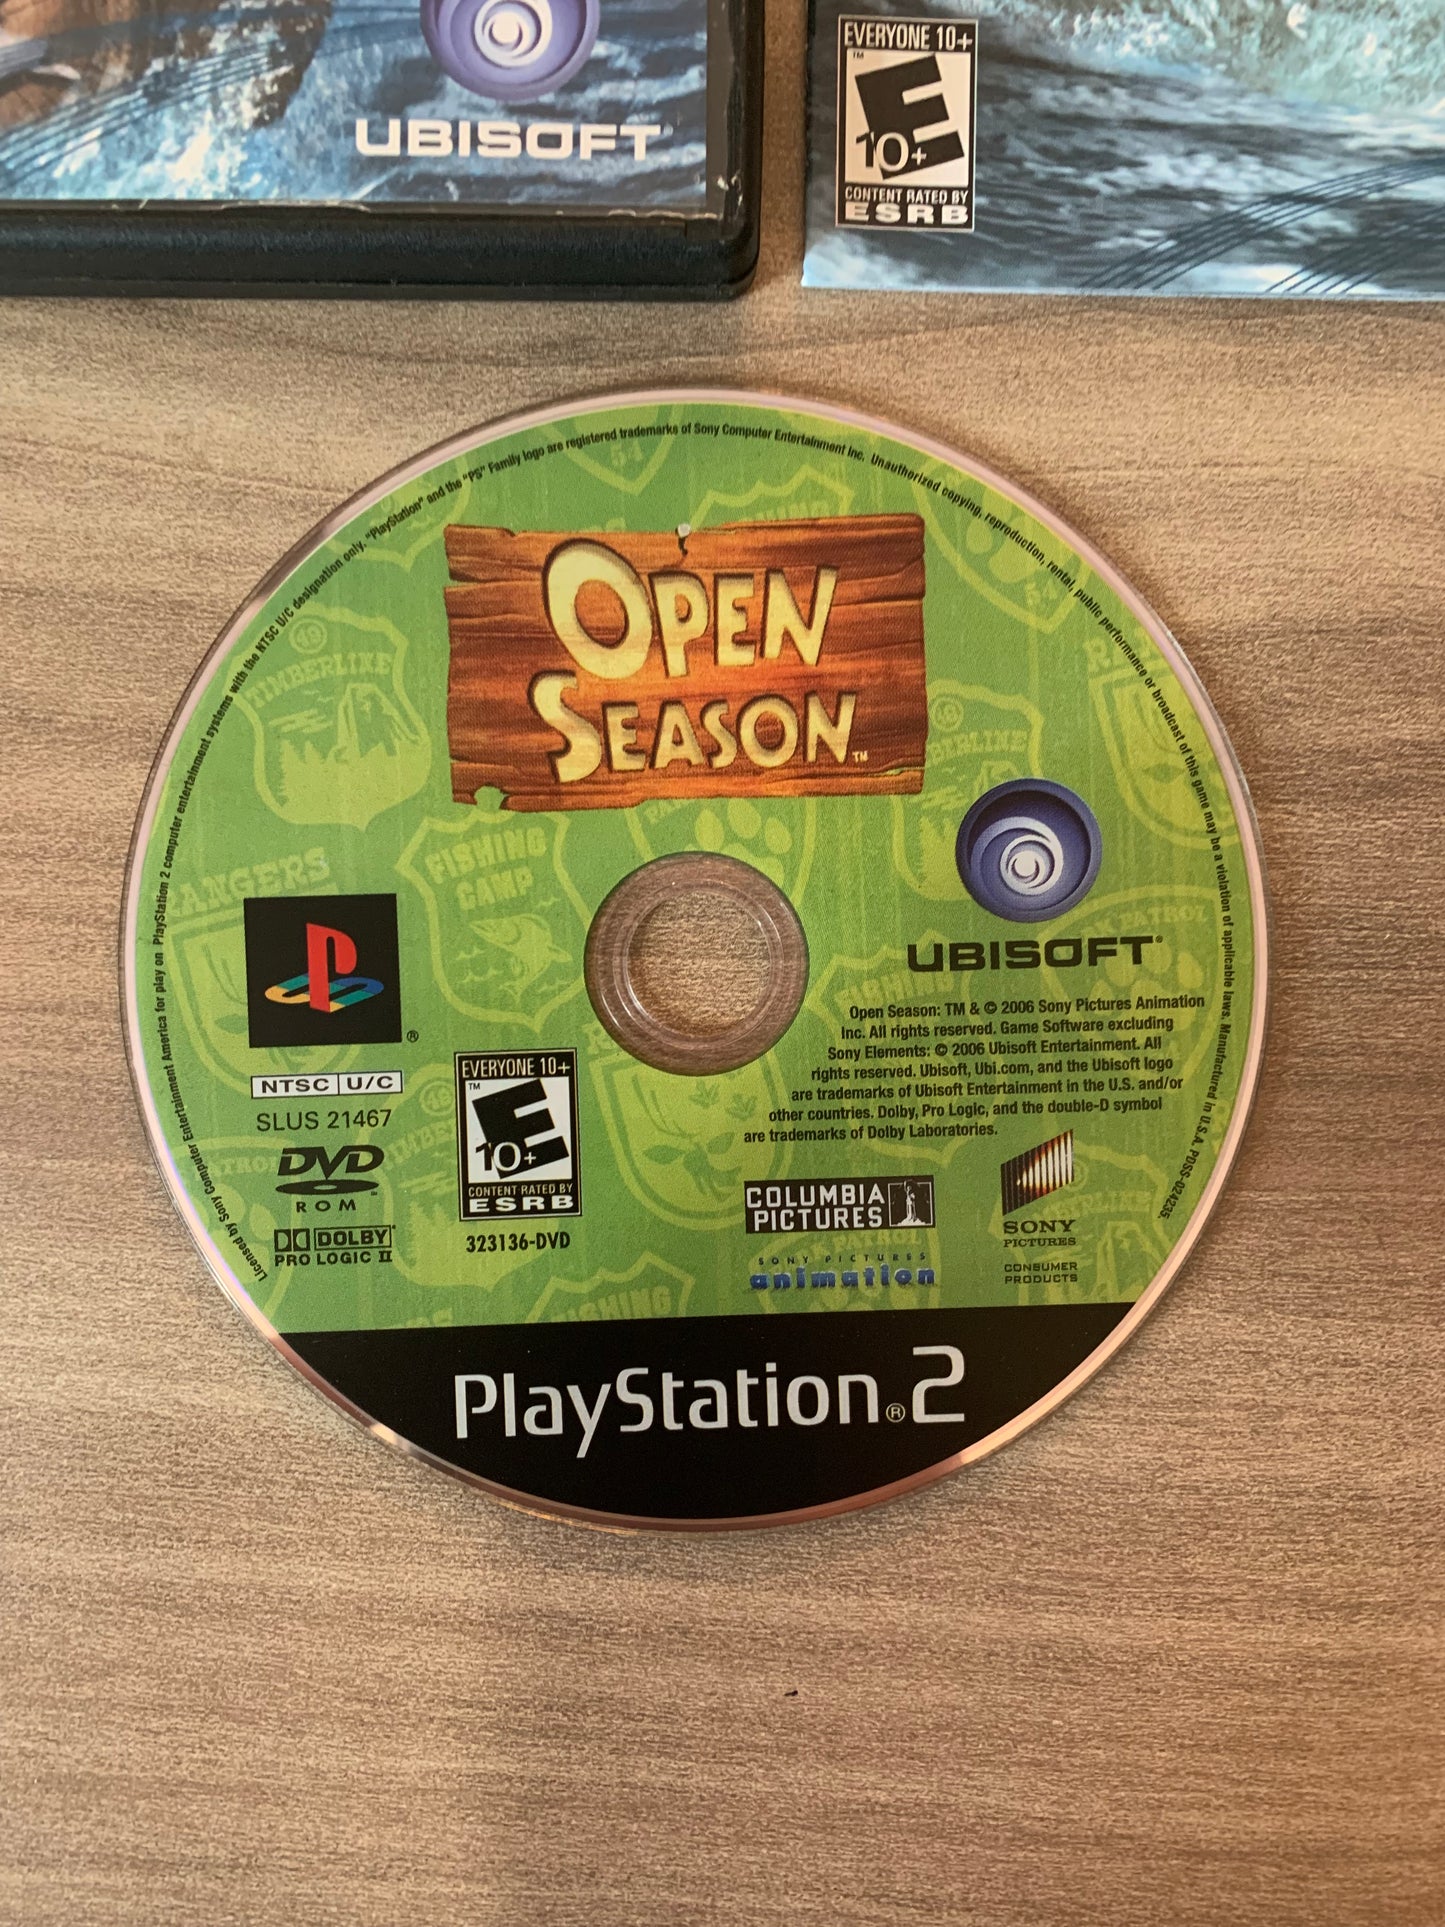 SONY PLAYSTATiON 2 [PS2] | OPEN SEASON